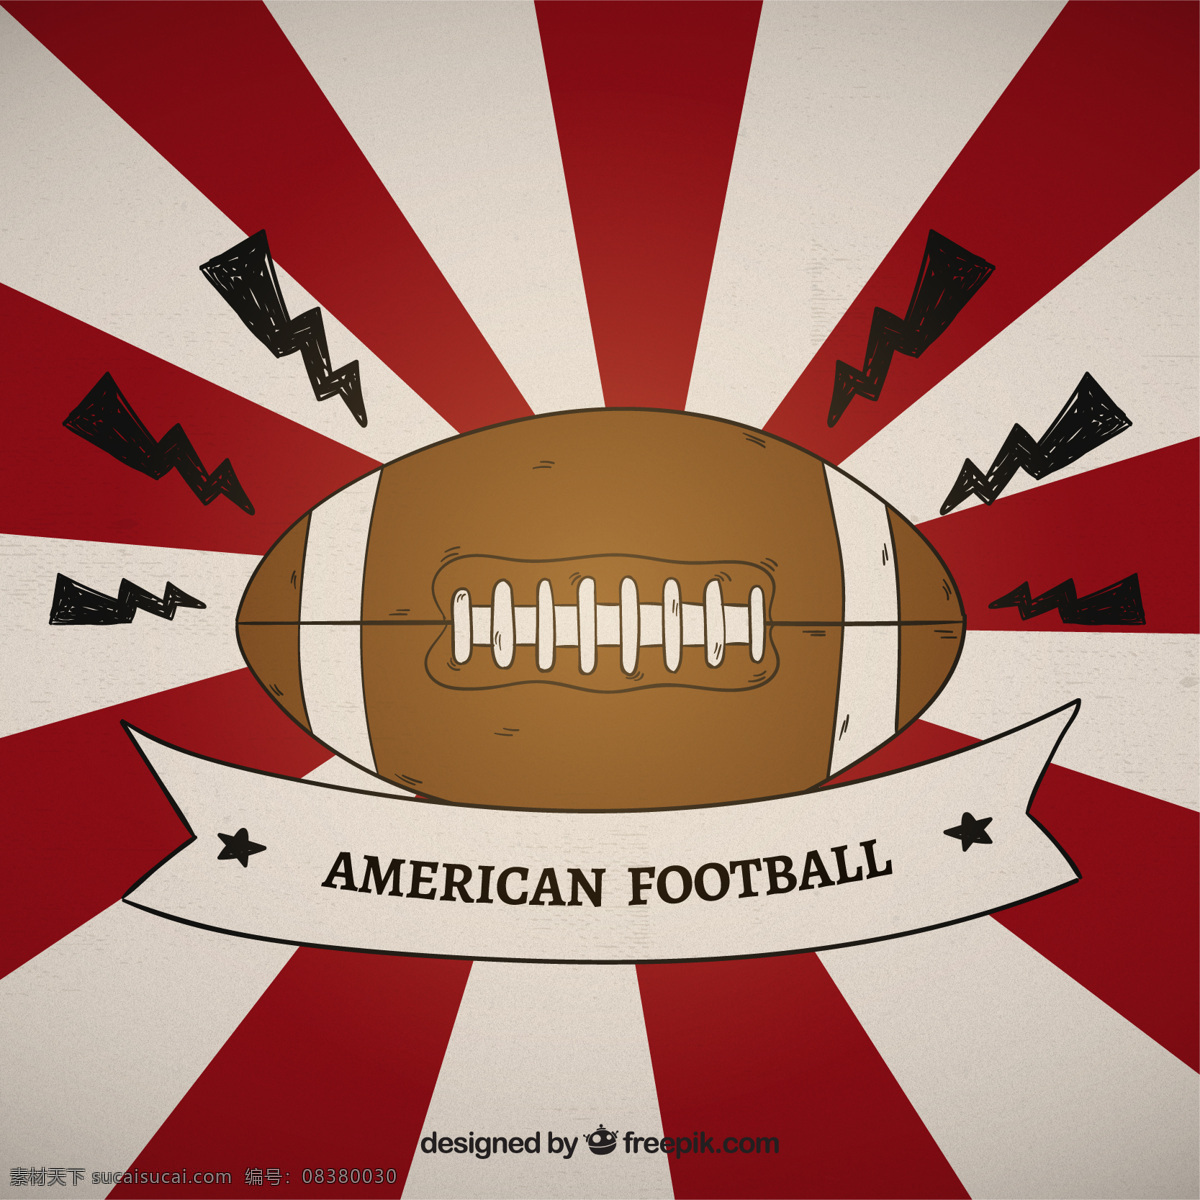 美国 足球 阳光 背景 的背景下 一方面 体育 手绘 绘图 球 竞争 碗 旭日 美式足球 橄榄球 绘制的 美国的 粗略的 素描 匹配 设备